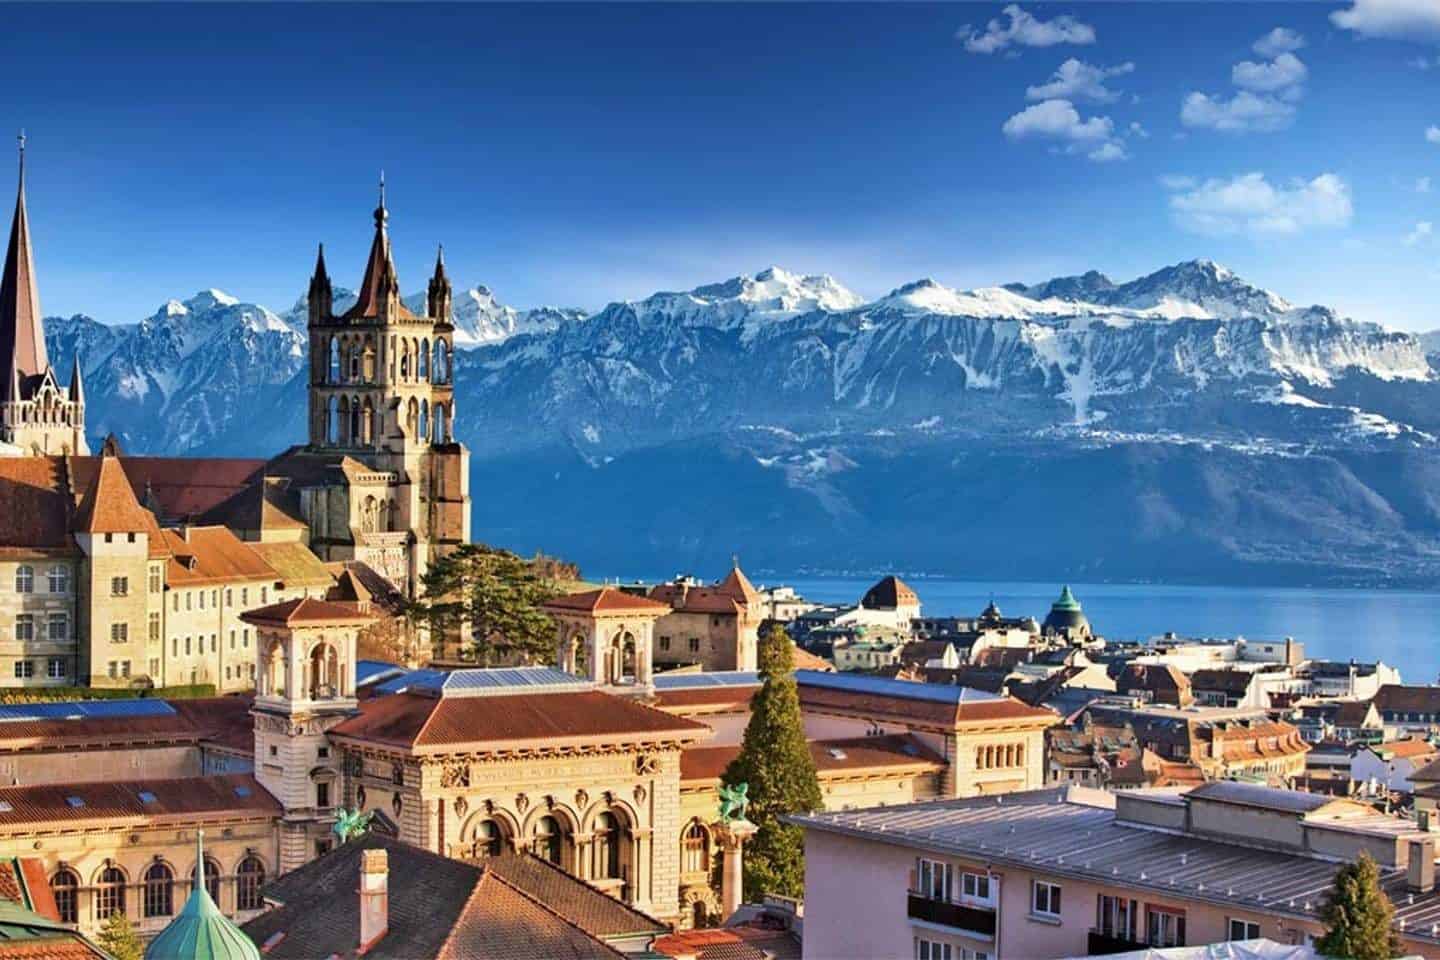 Lausanne Airbnb In Switzerland